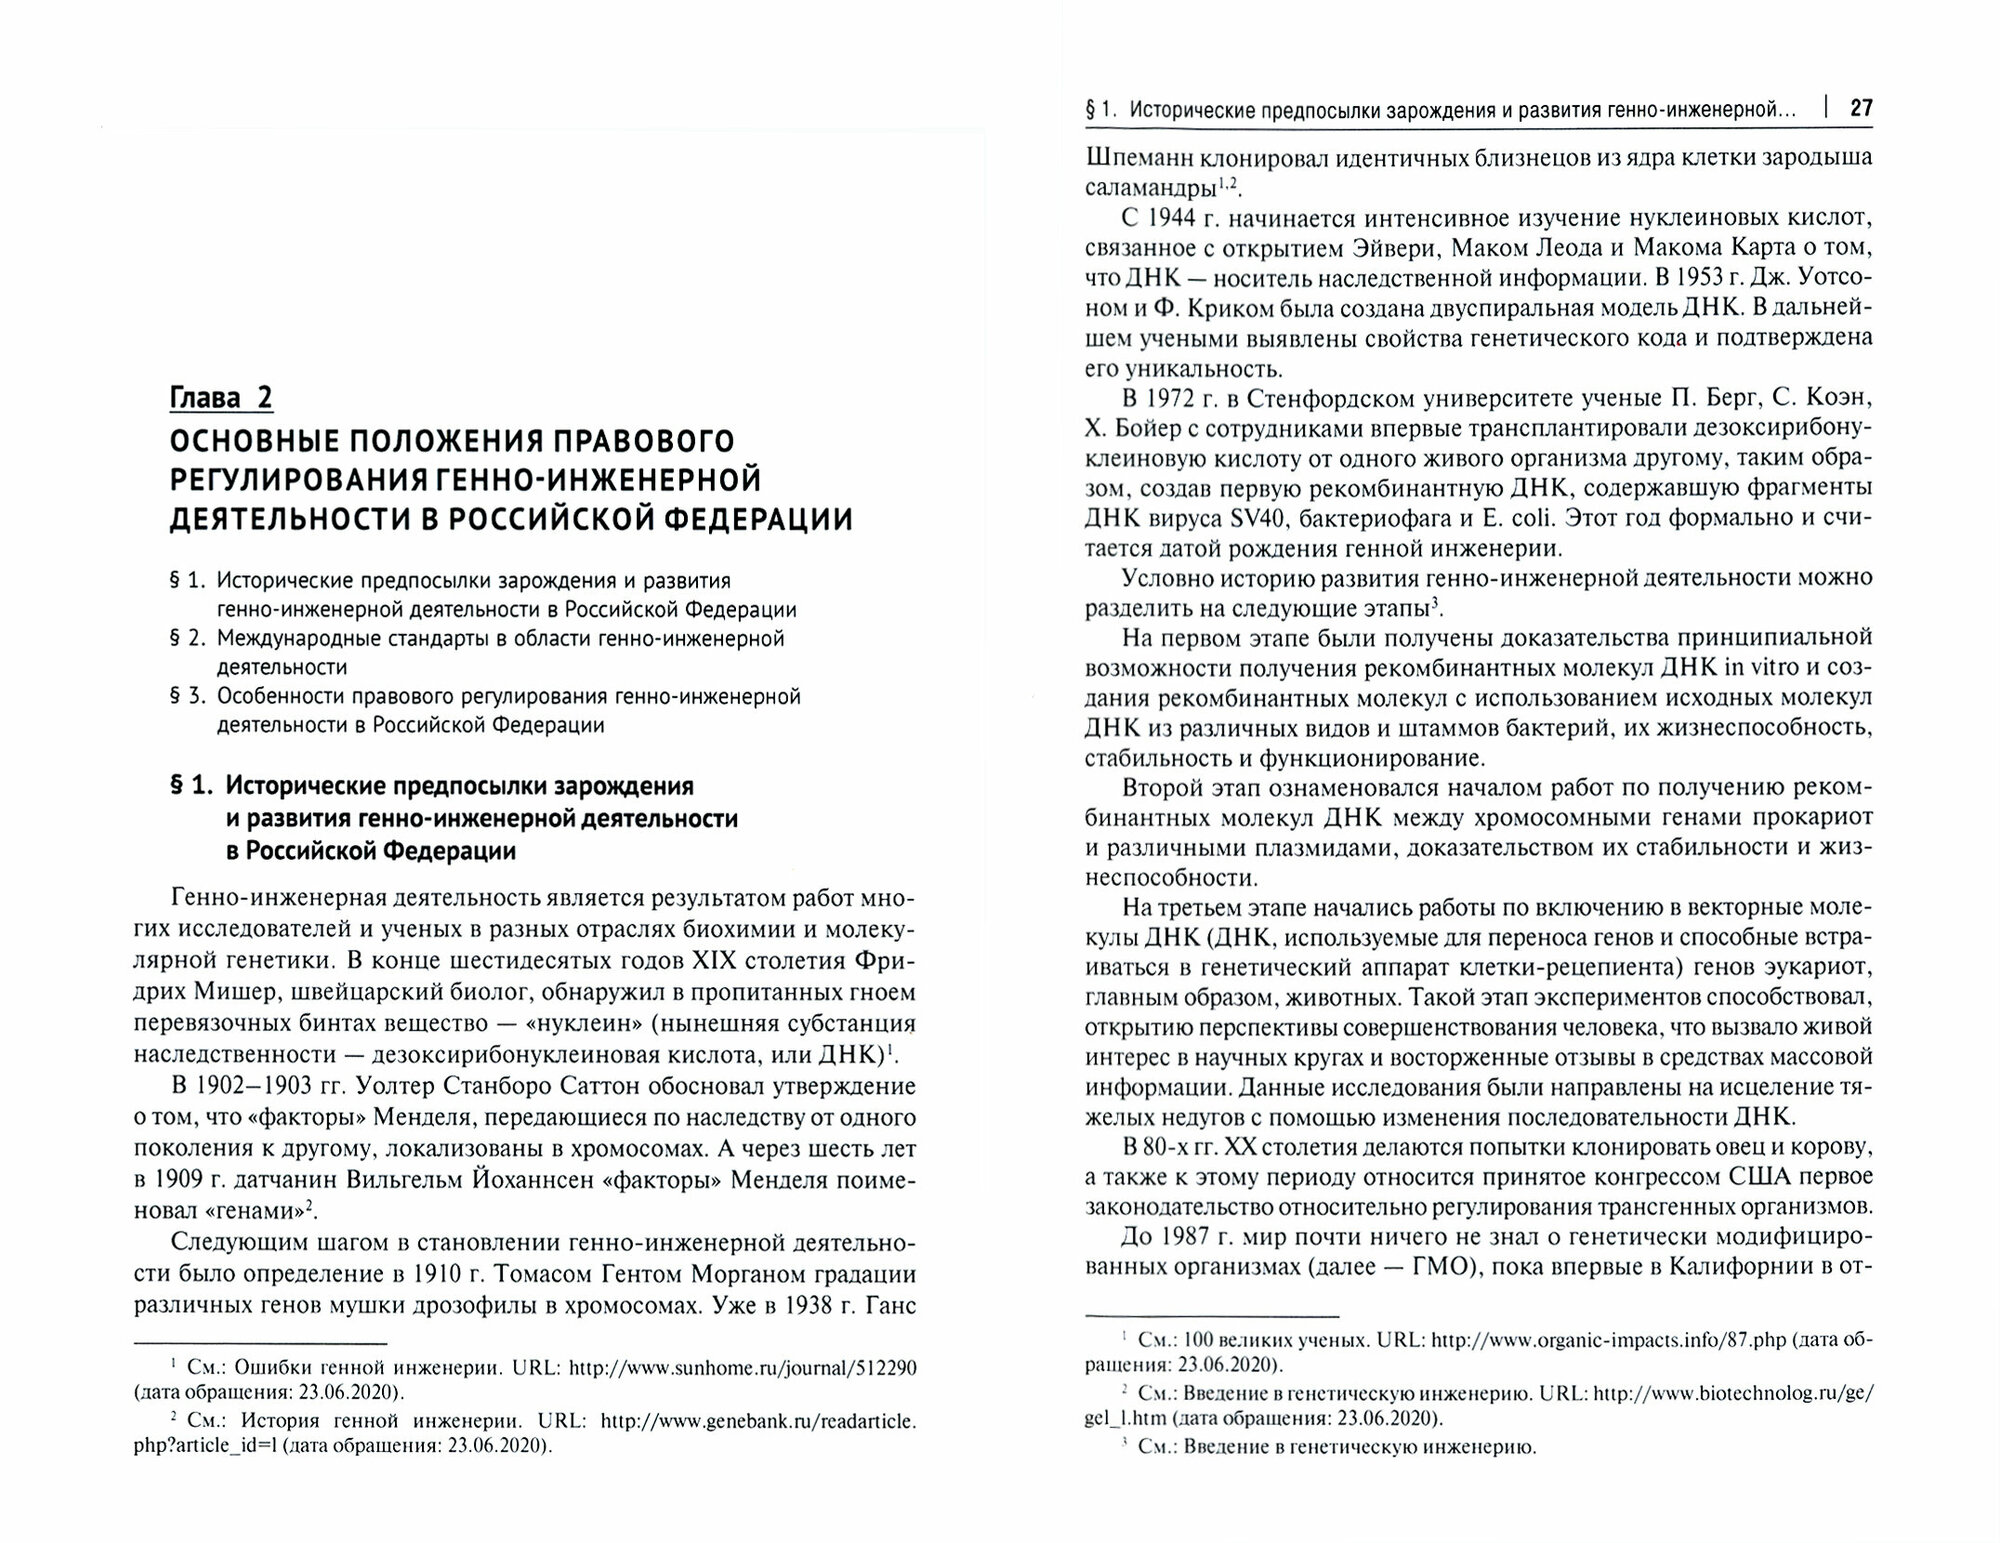 Правовое обеспечение национальной безопасности РФ в сфере развития генетических технологий - фото №2